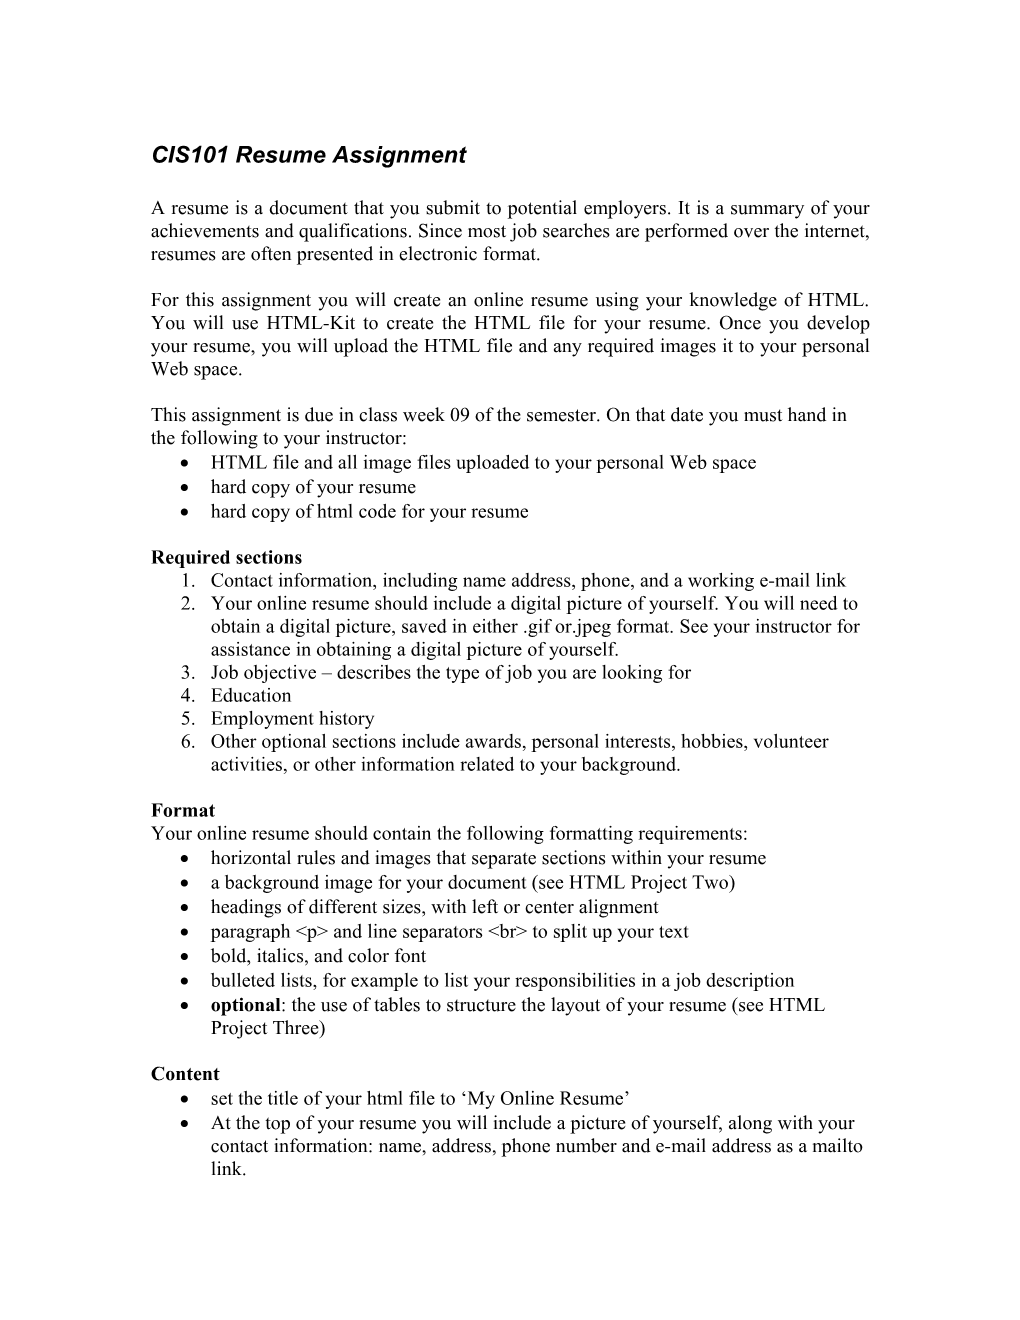 CIS101 Resume Assignment